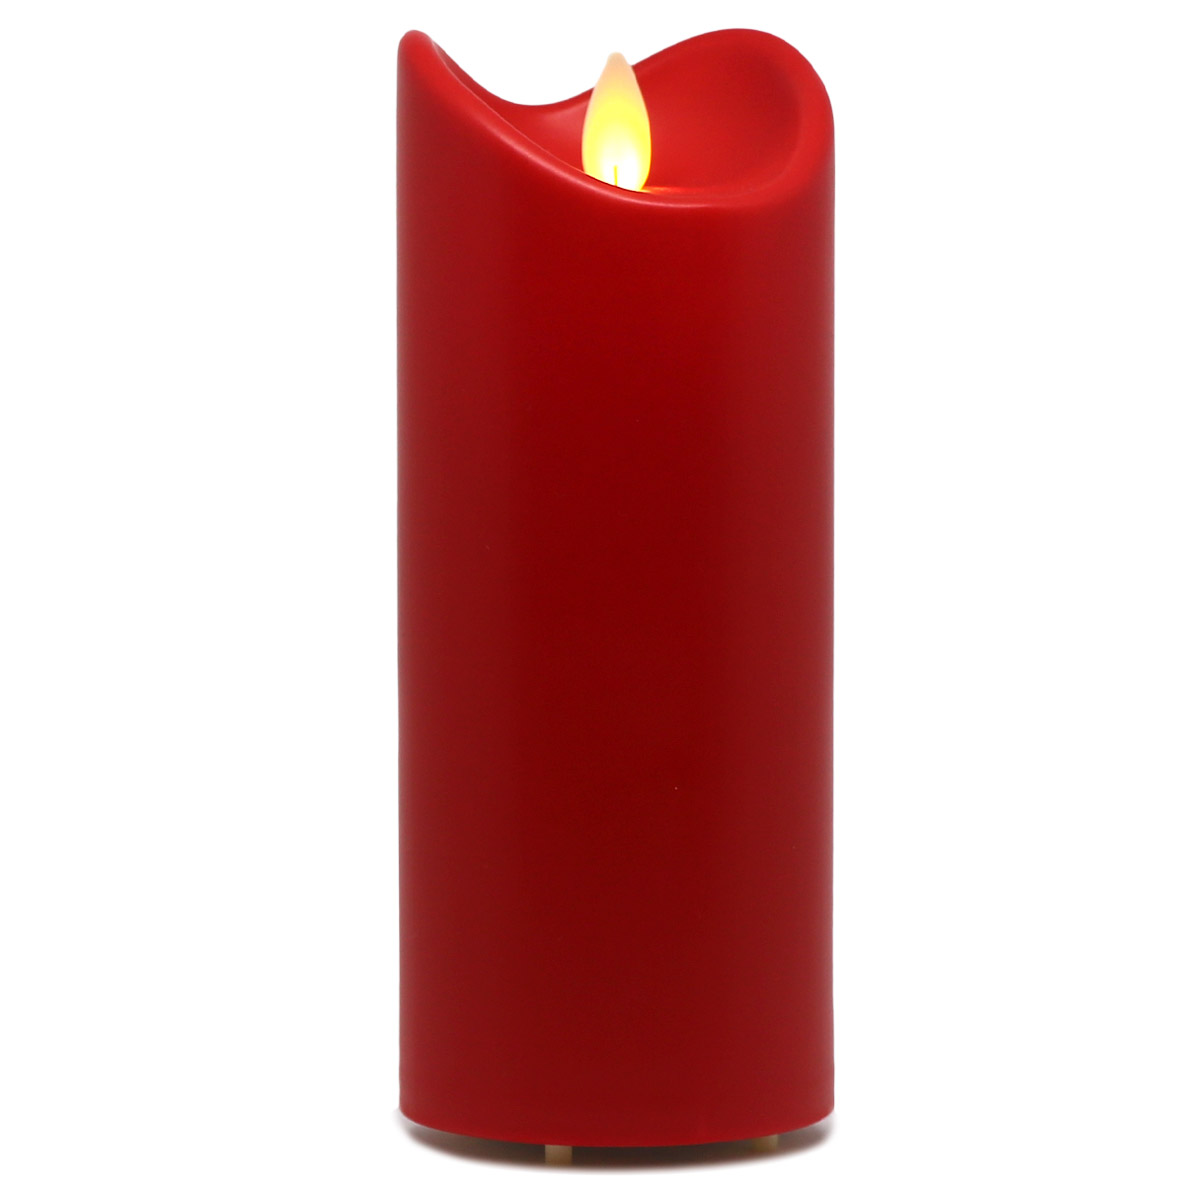 LED-Kunstharzkerze mit "Flamme", Rot, ca. 18cm, IP44 Outdoor Kerze